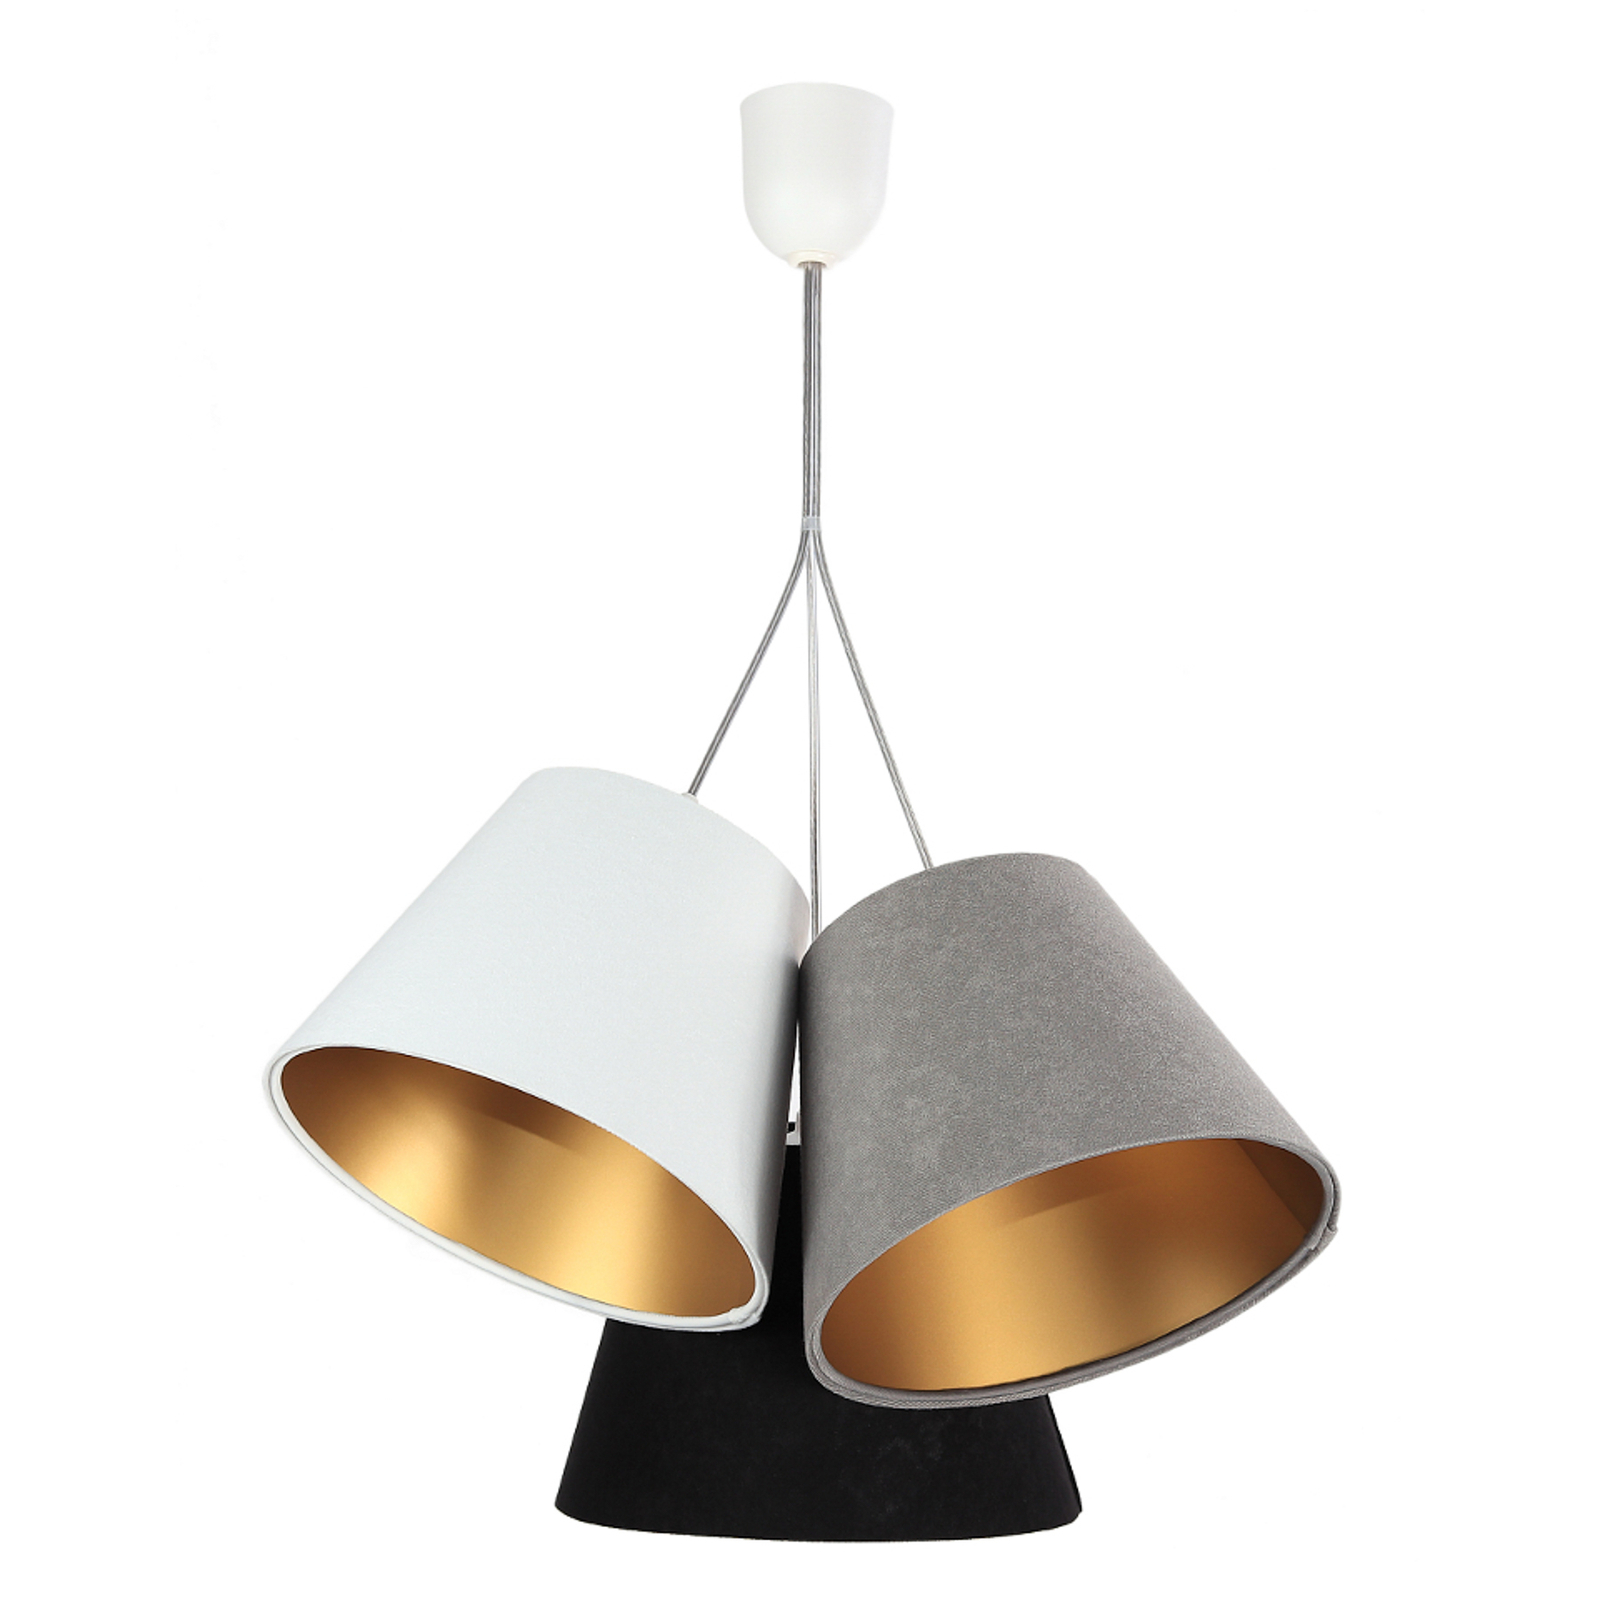 Hanglamp Zsofia 3-lamps wit/grijs/zwart/goud